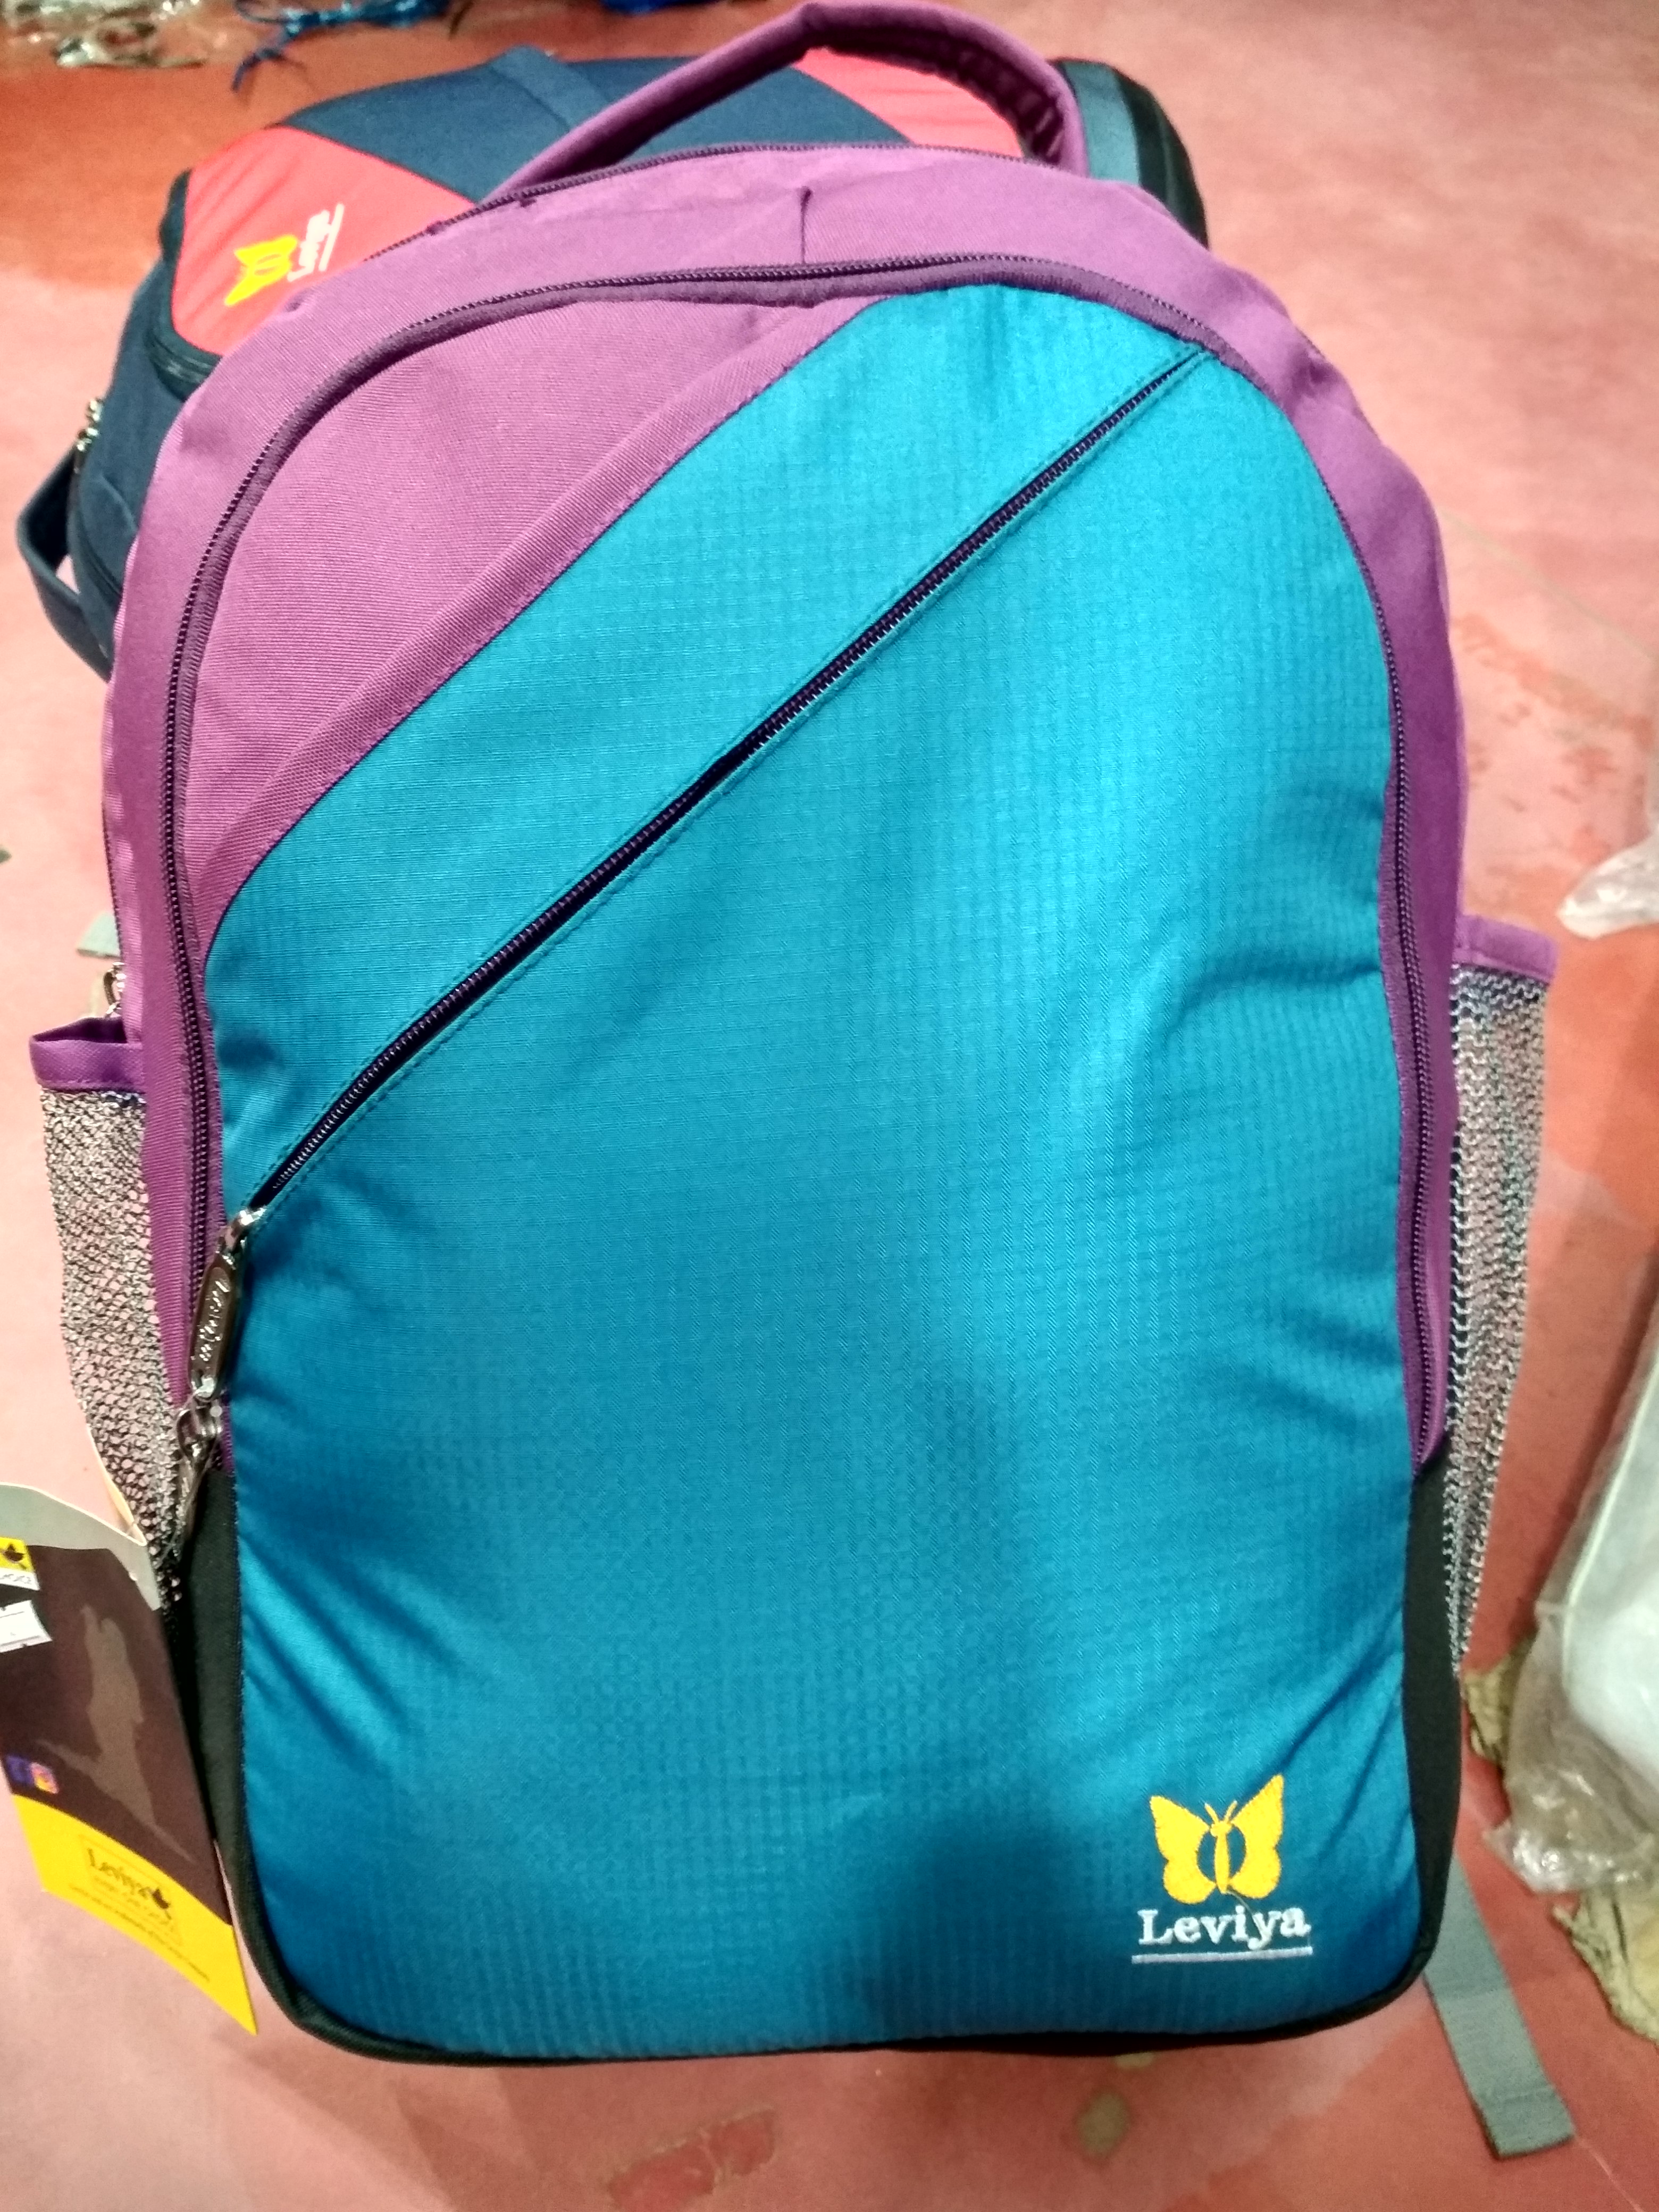 Wildcraft school bag